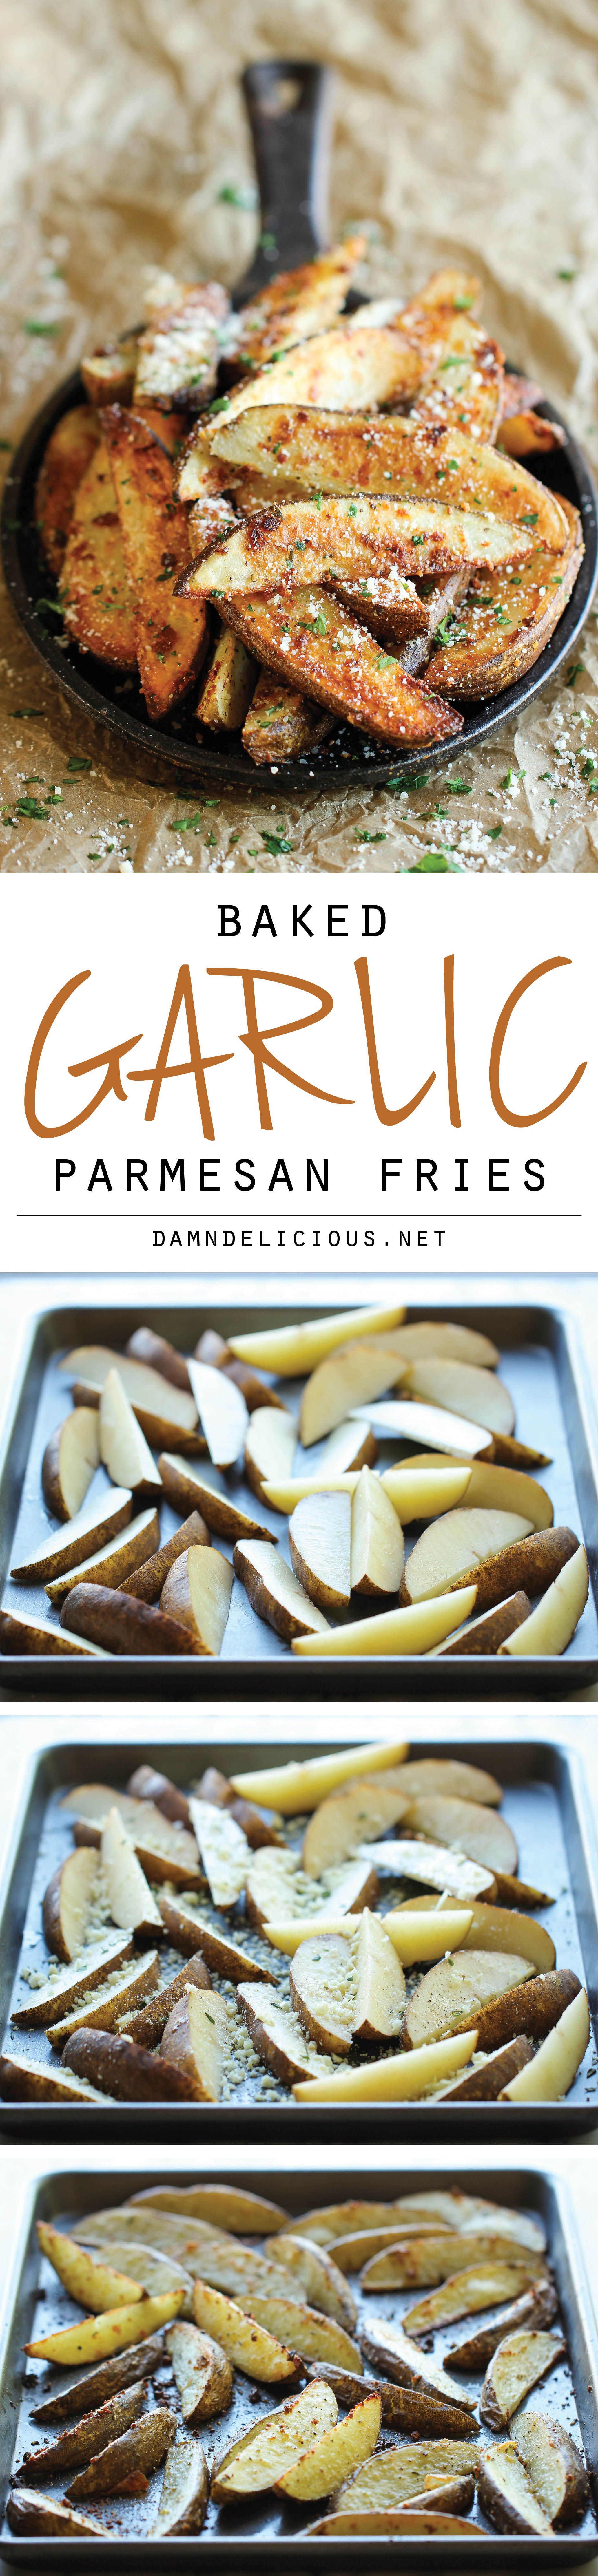 Garlic Parmesan Fries – Ama